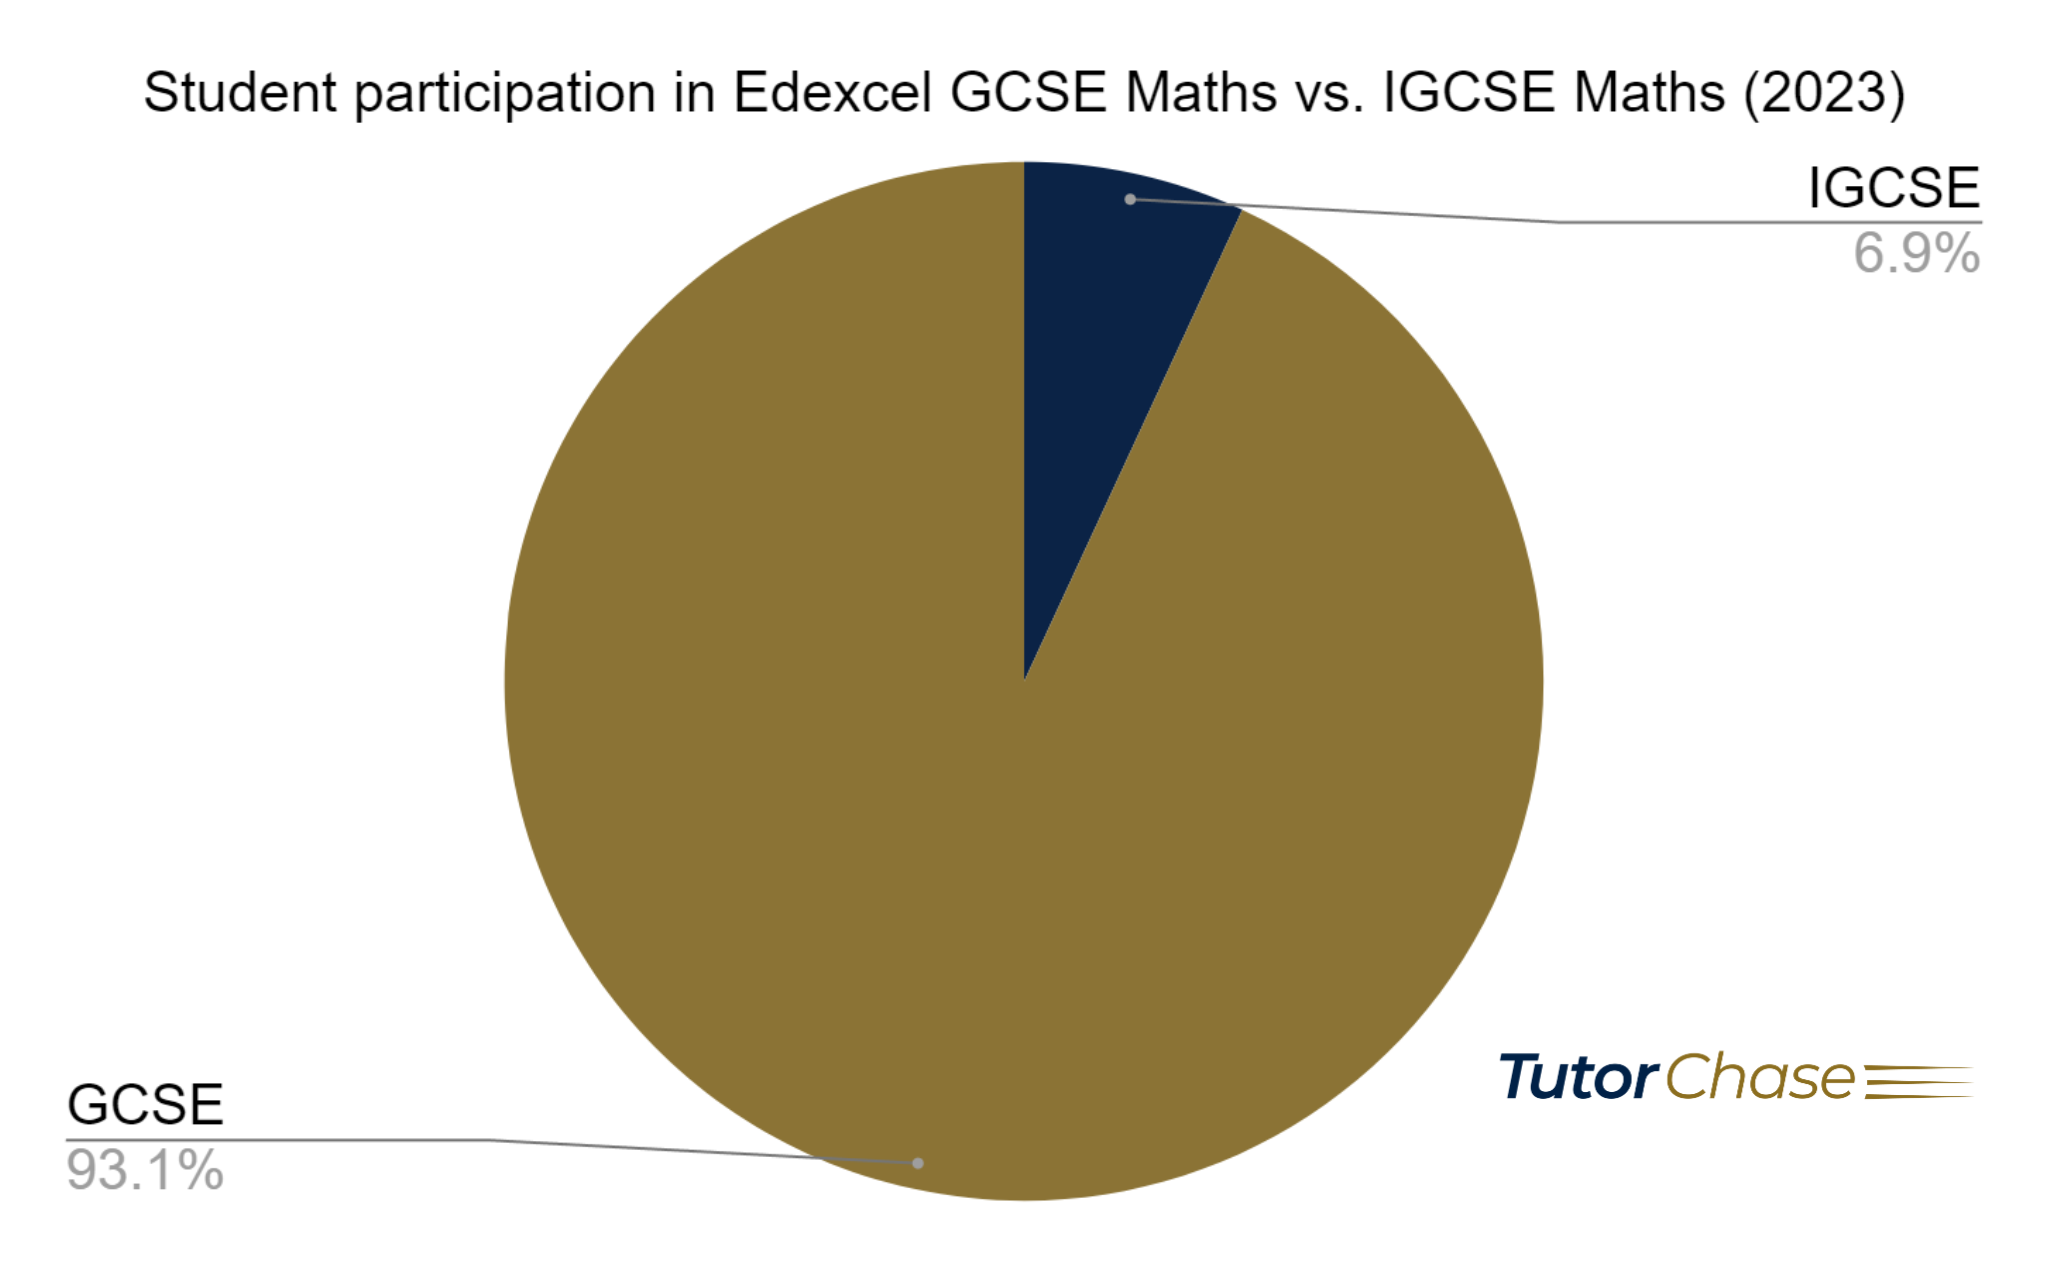 Student participation in Edexcel GCSE Maths vs. IGCSE Maths, June 2023